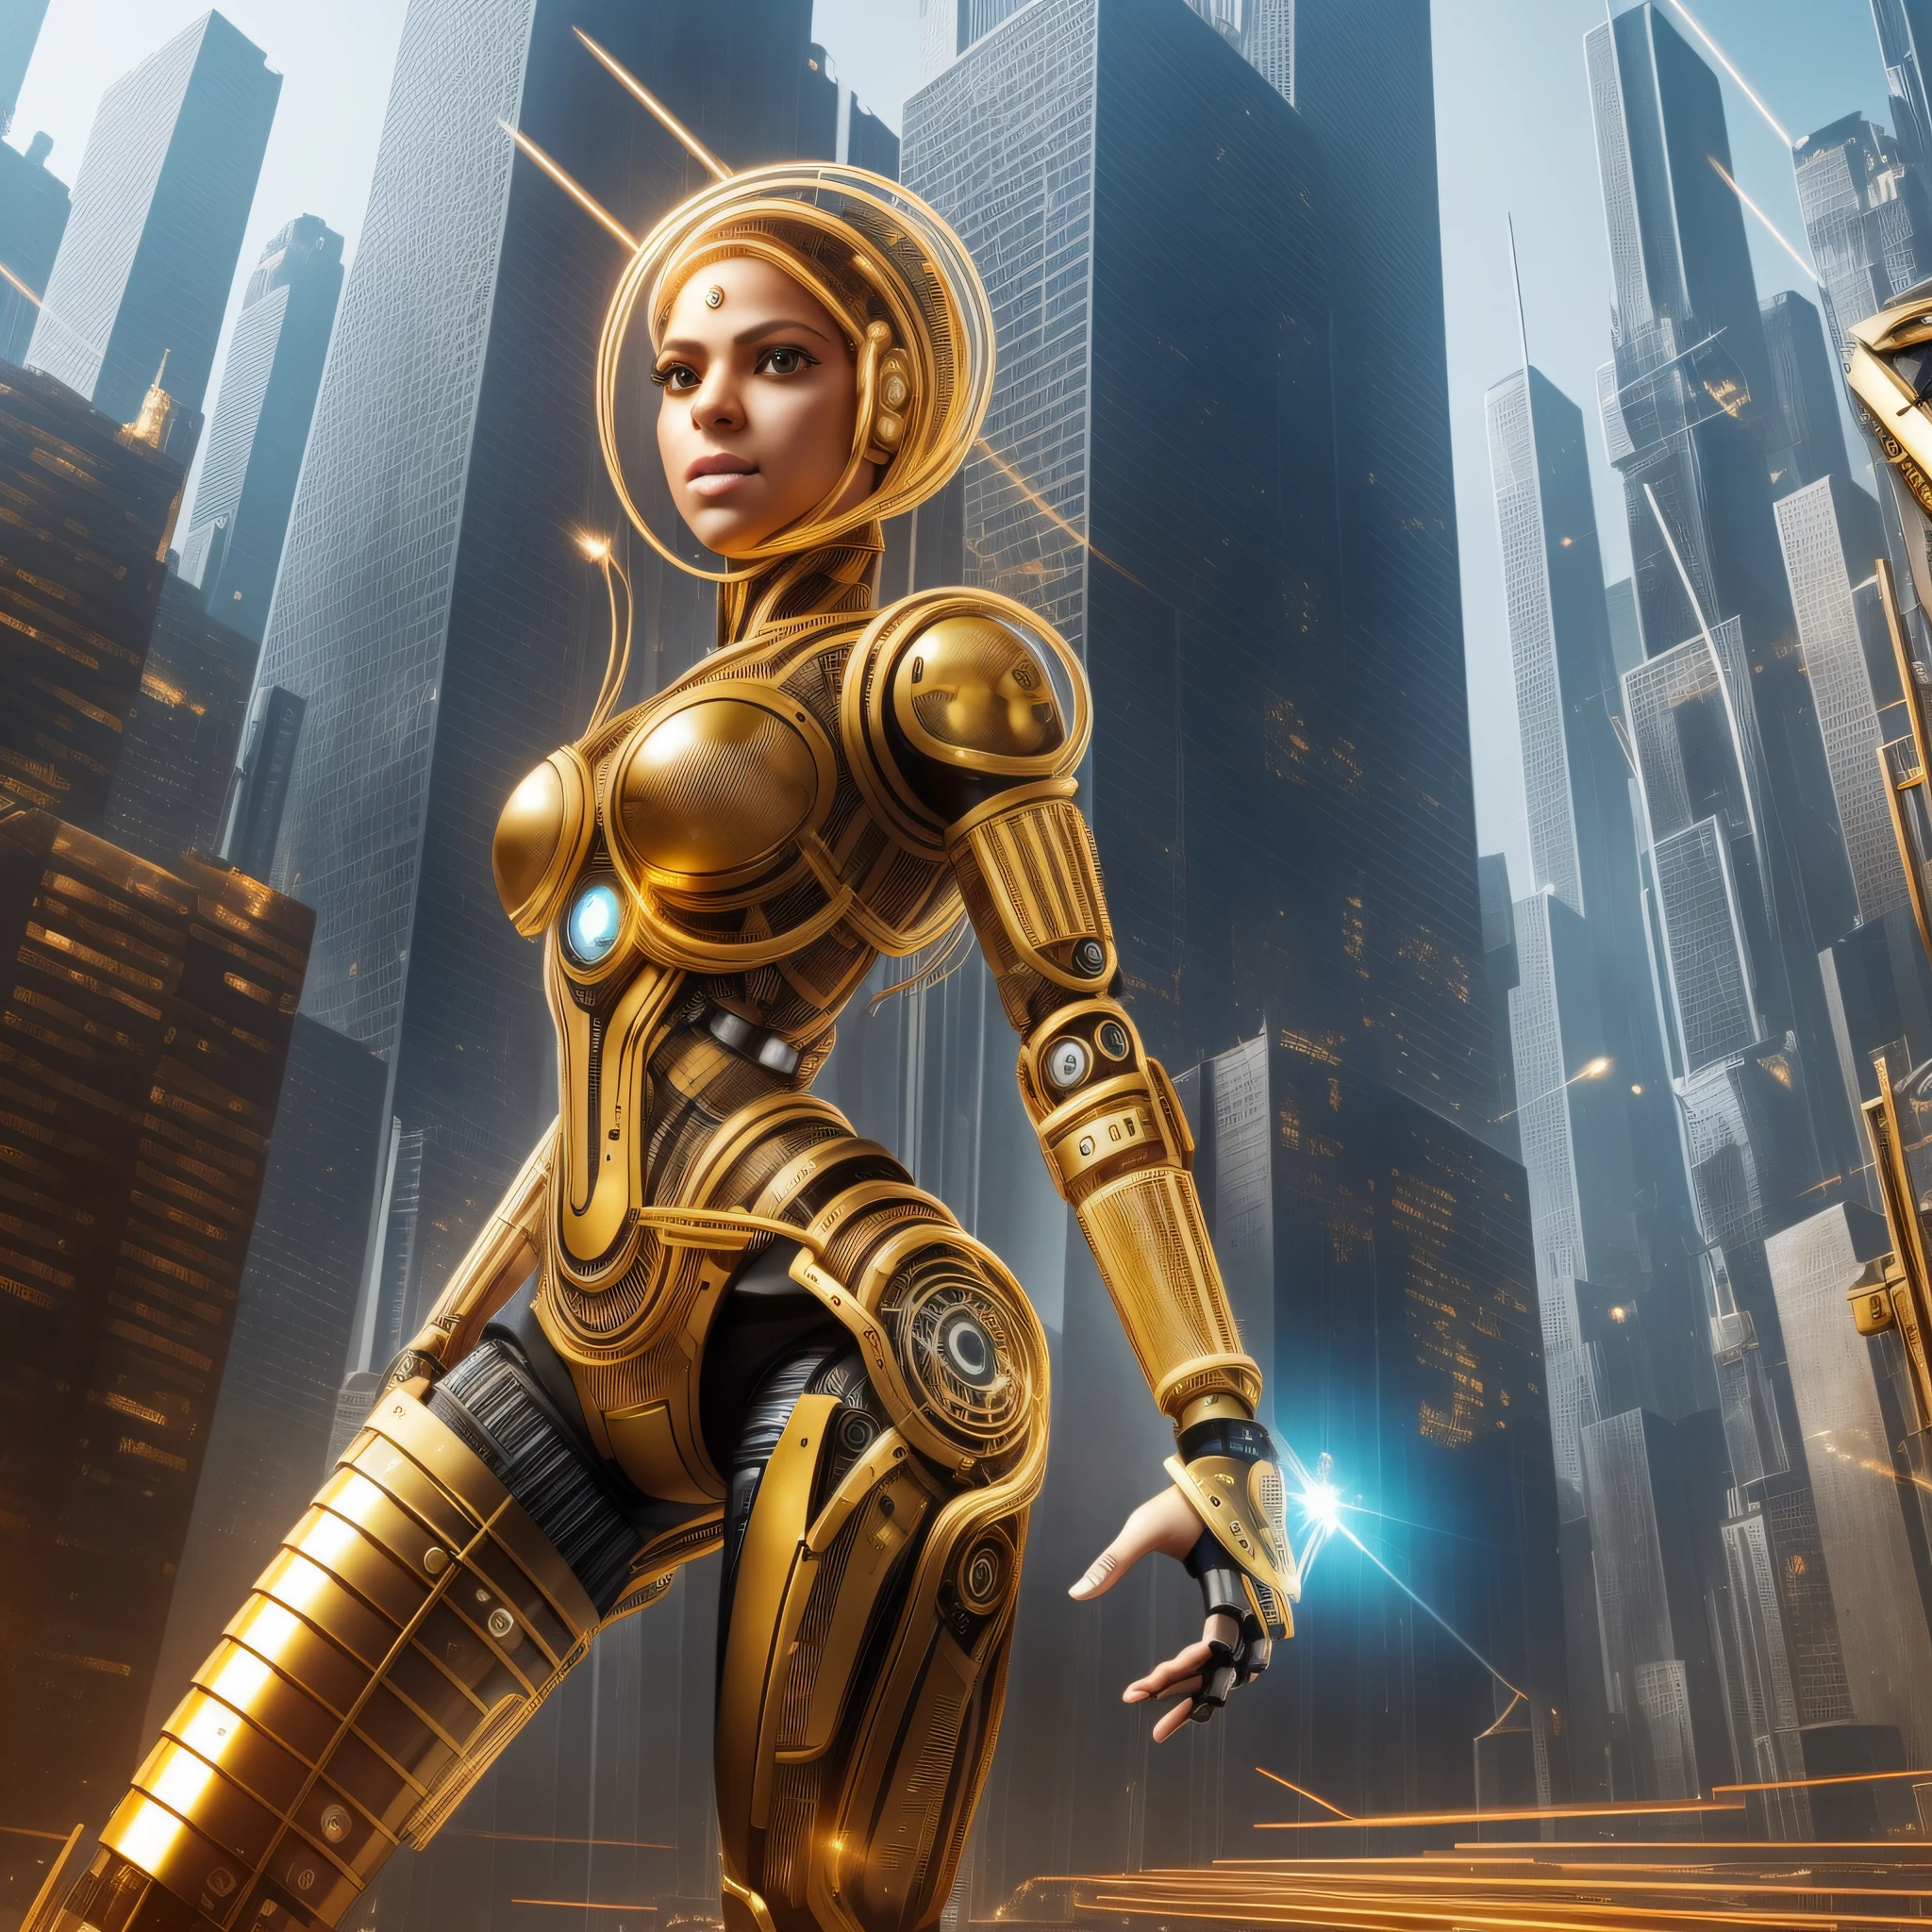 1 안드로이드 여성, 샤키라의 얼굴, 본체 옆에 금속 부품이 있는 경우, 로봇 팔과 다리, 몸 옆에 있는 금색 전선과 기어, 얼굴에 마이크로 칩, 미래 도시 배경,